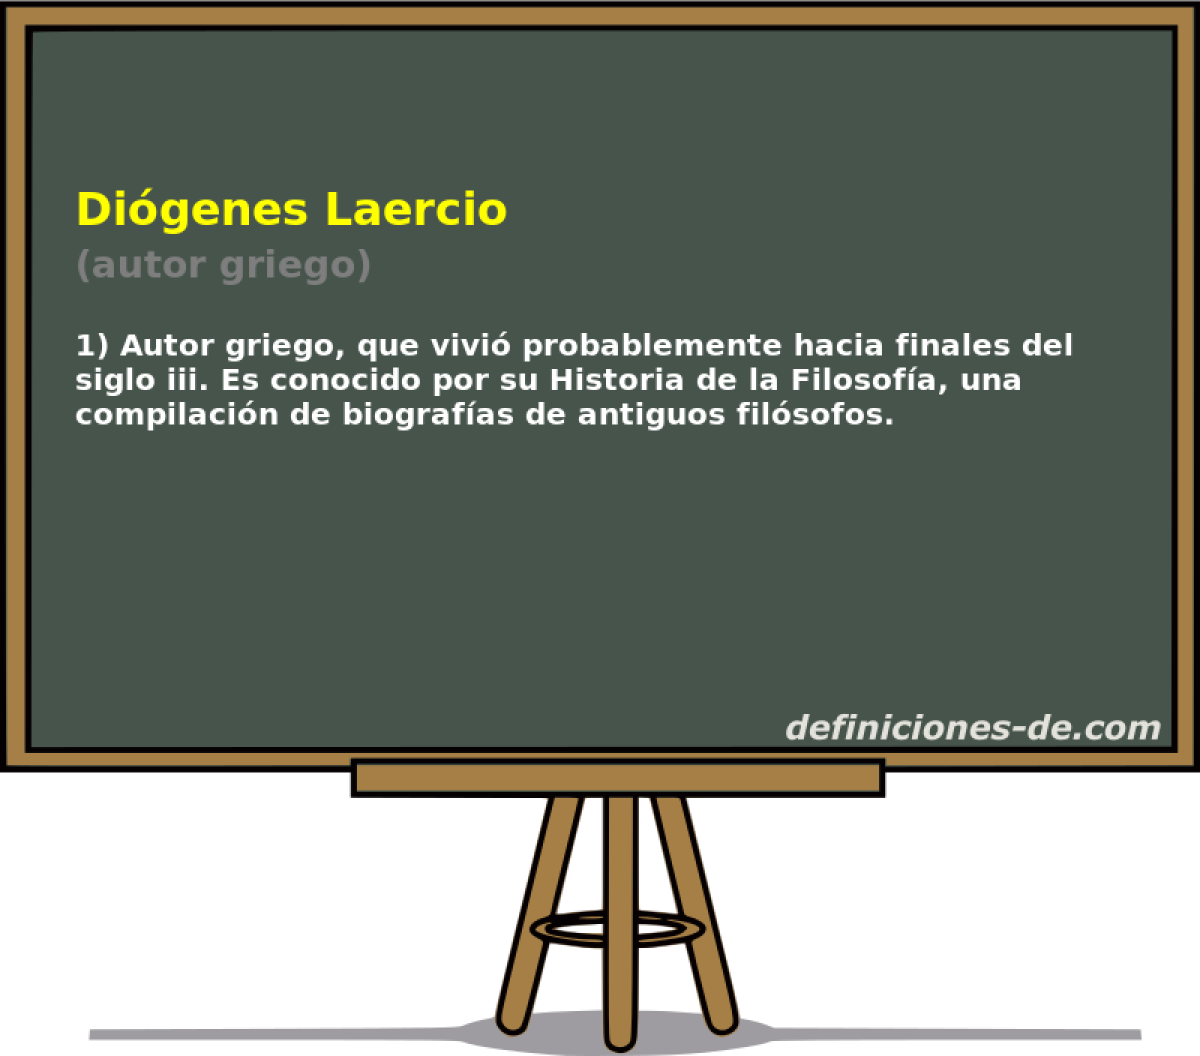 Digenes Laercio (autor griego)